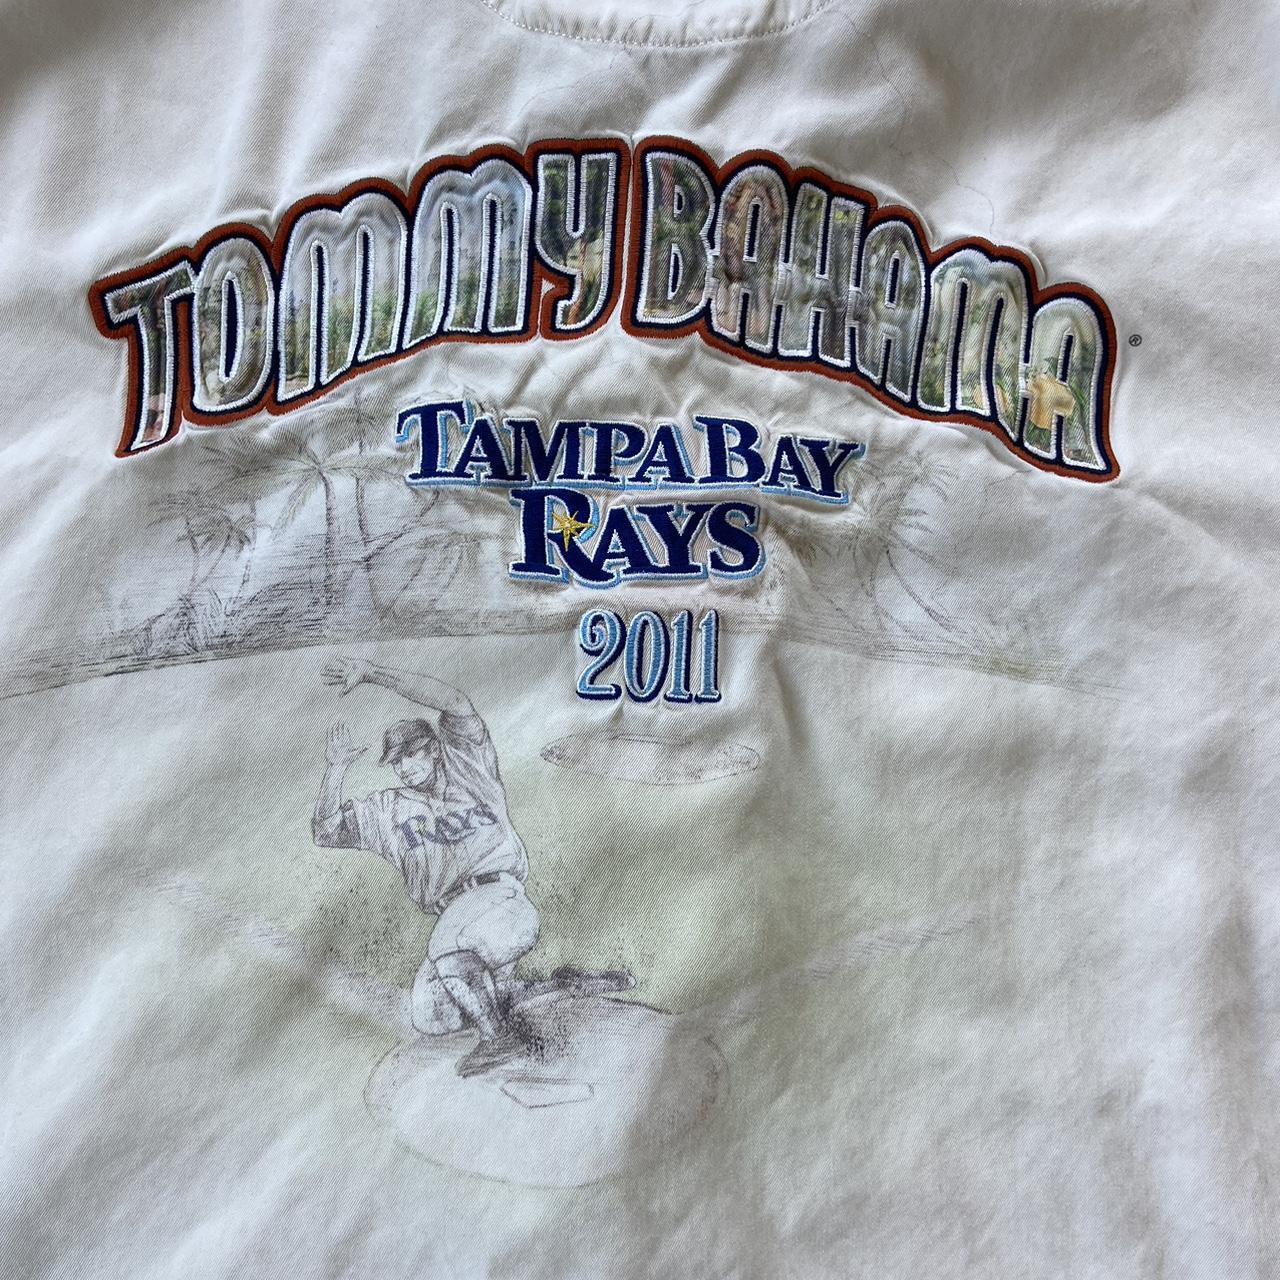 tommy bahama rays shirt